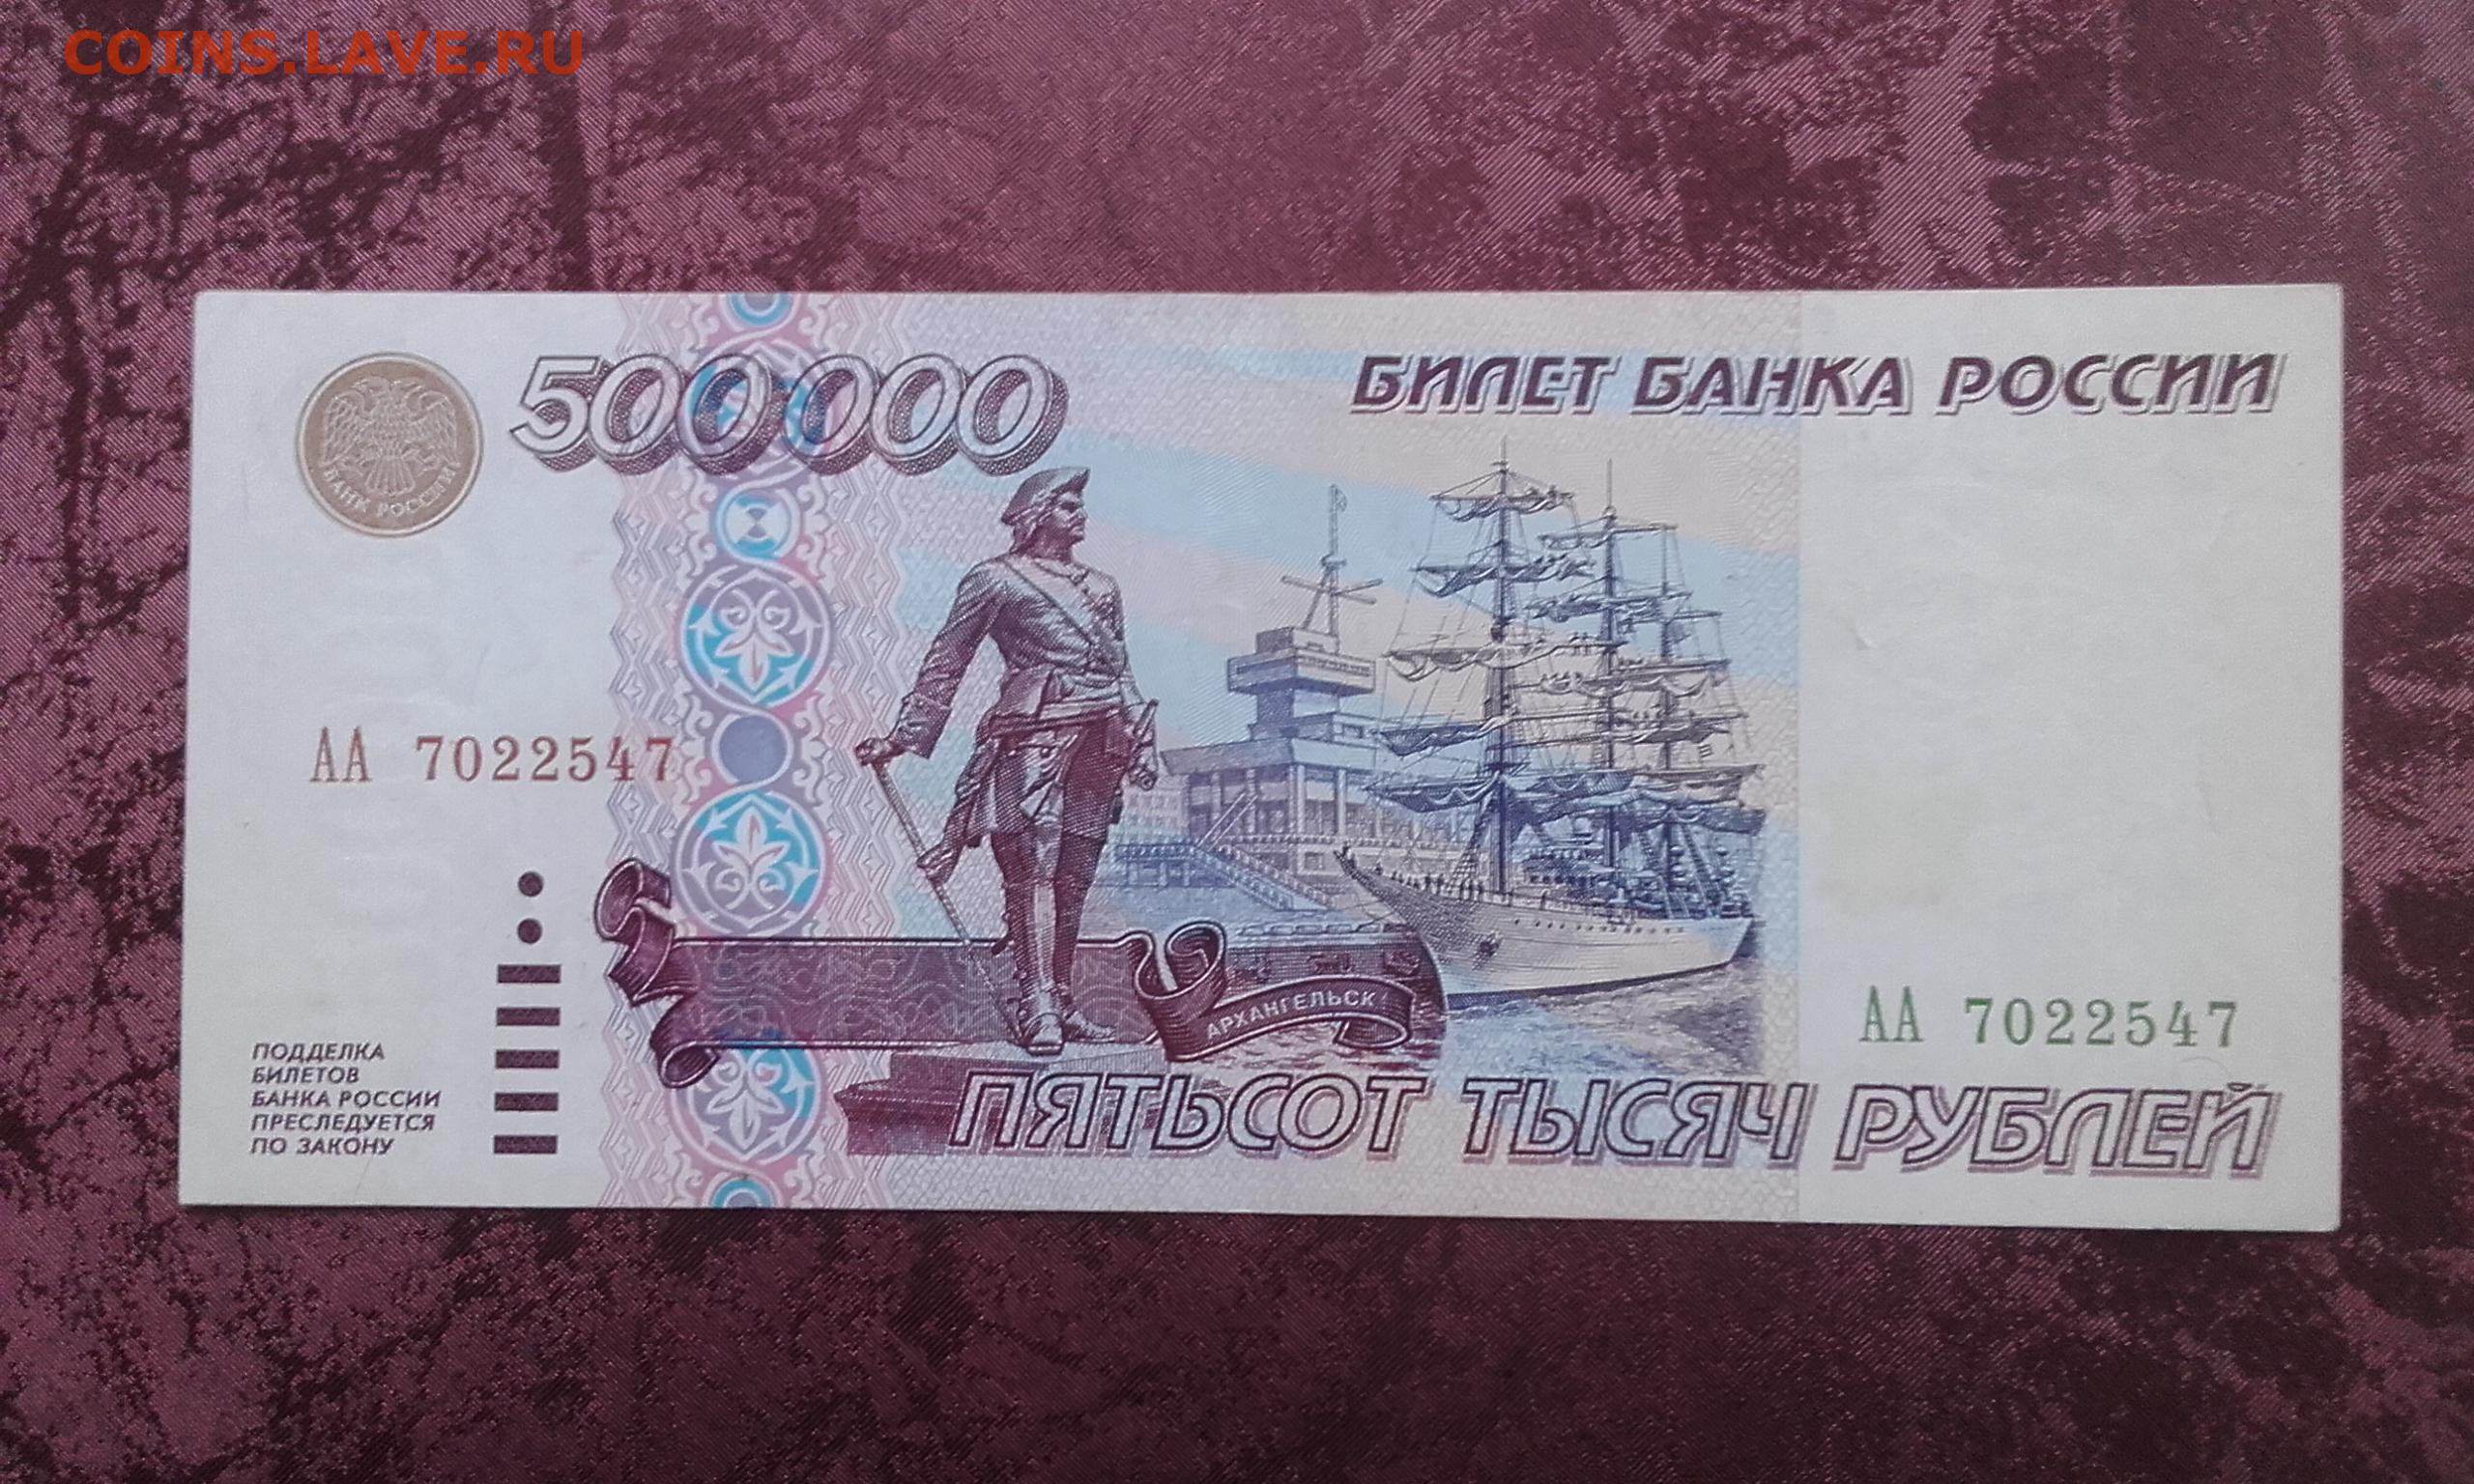 500000 рублей россии в долларах